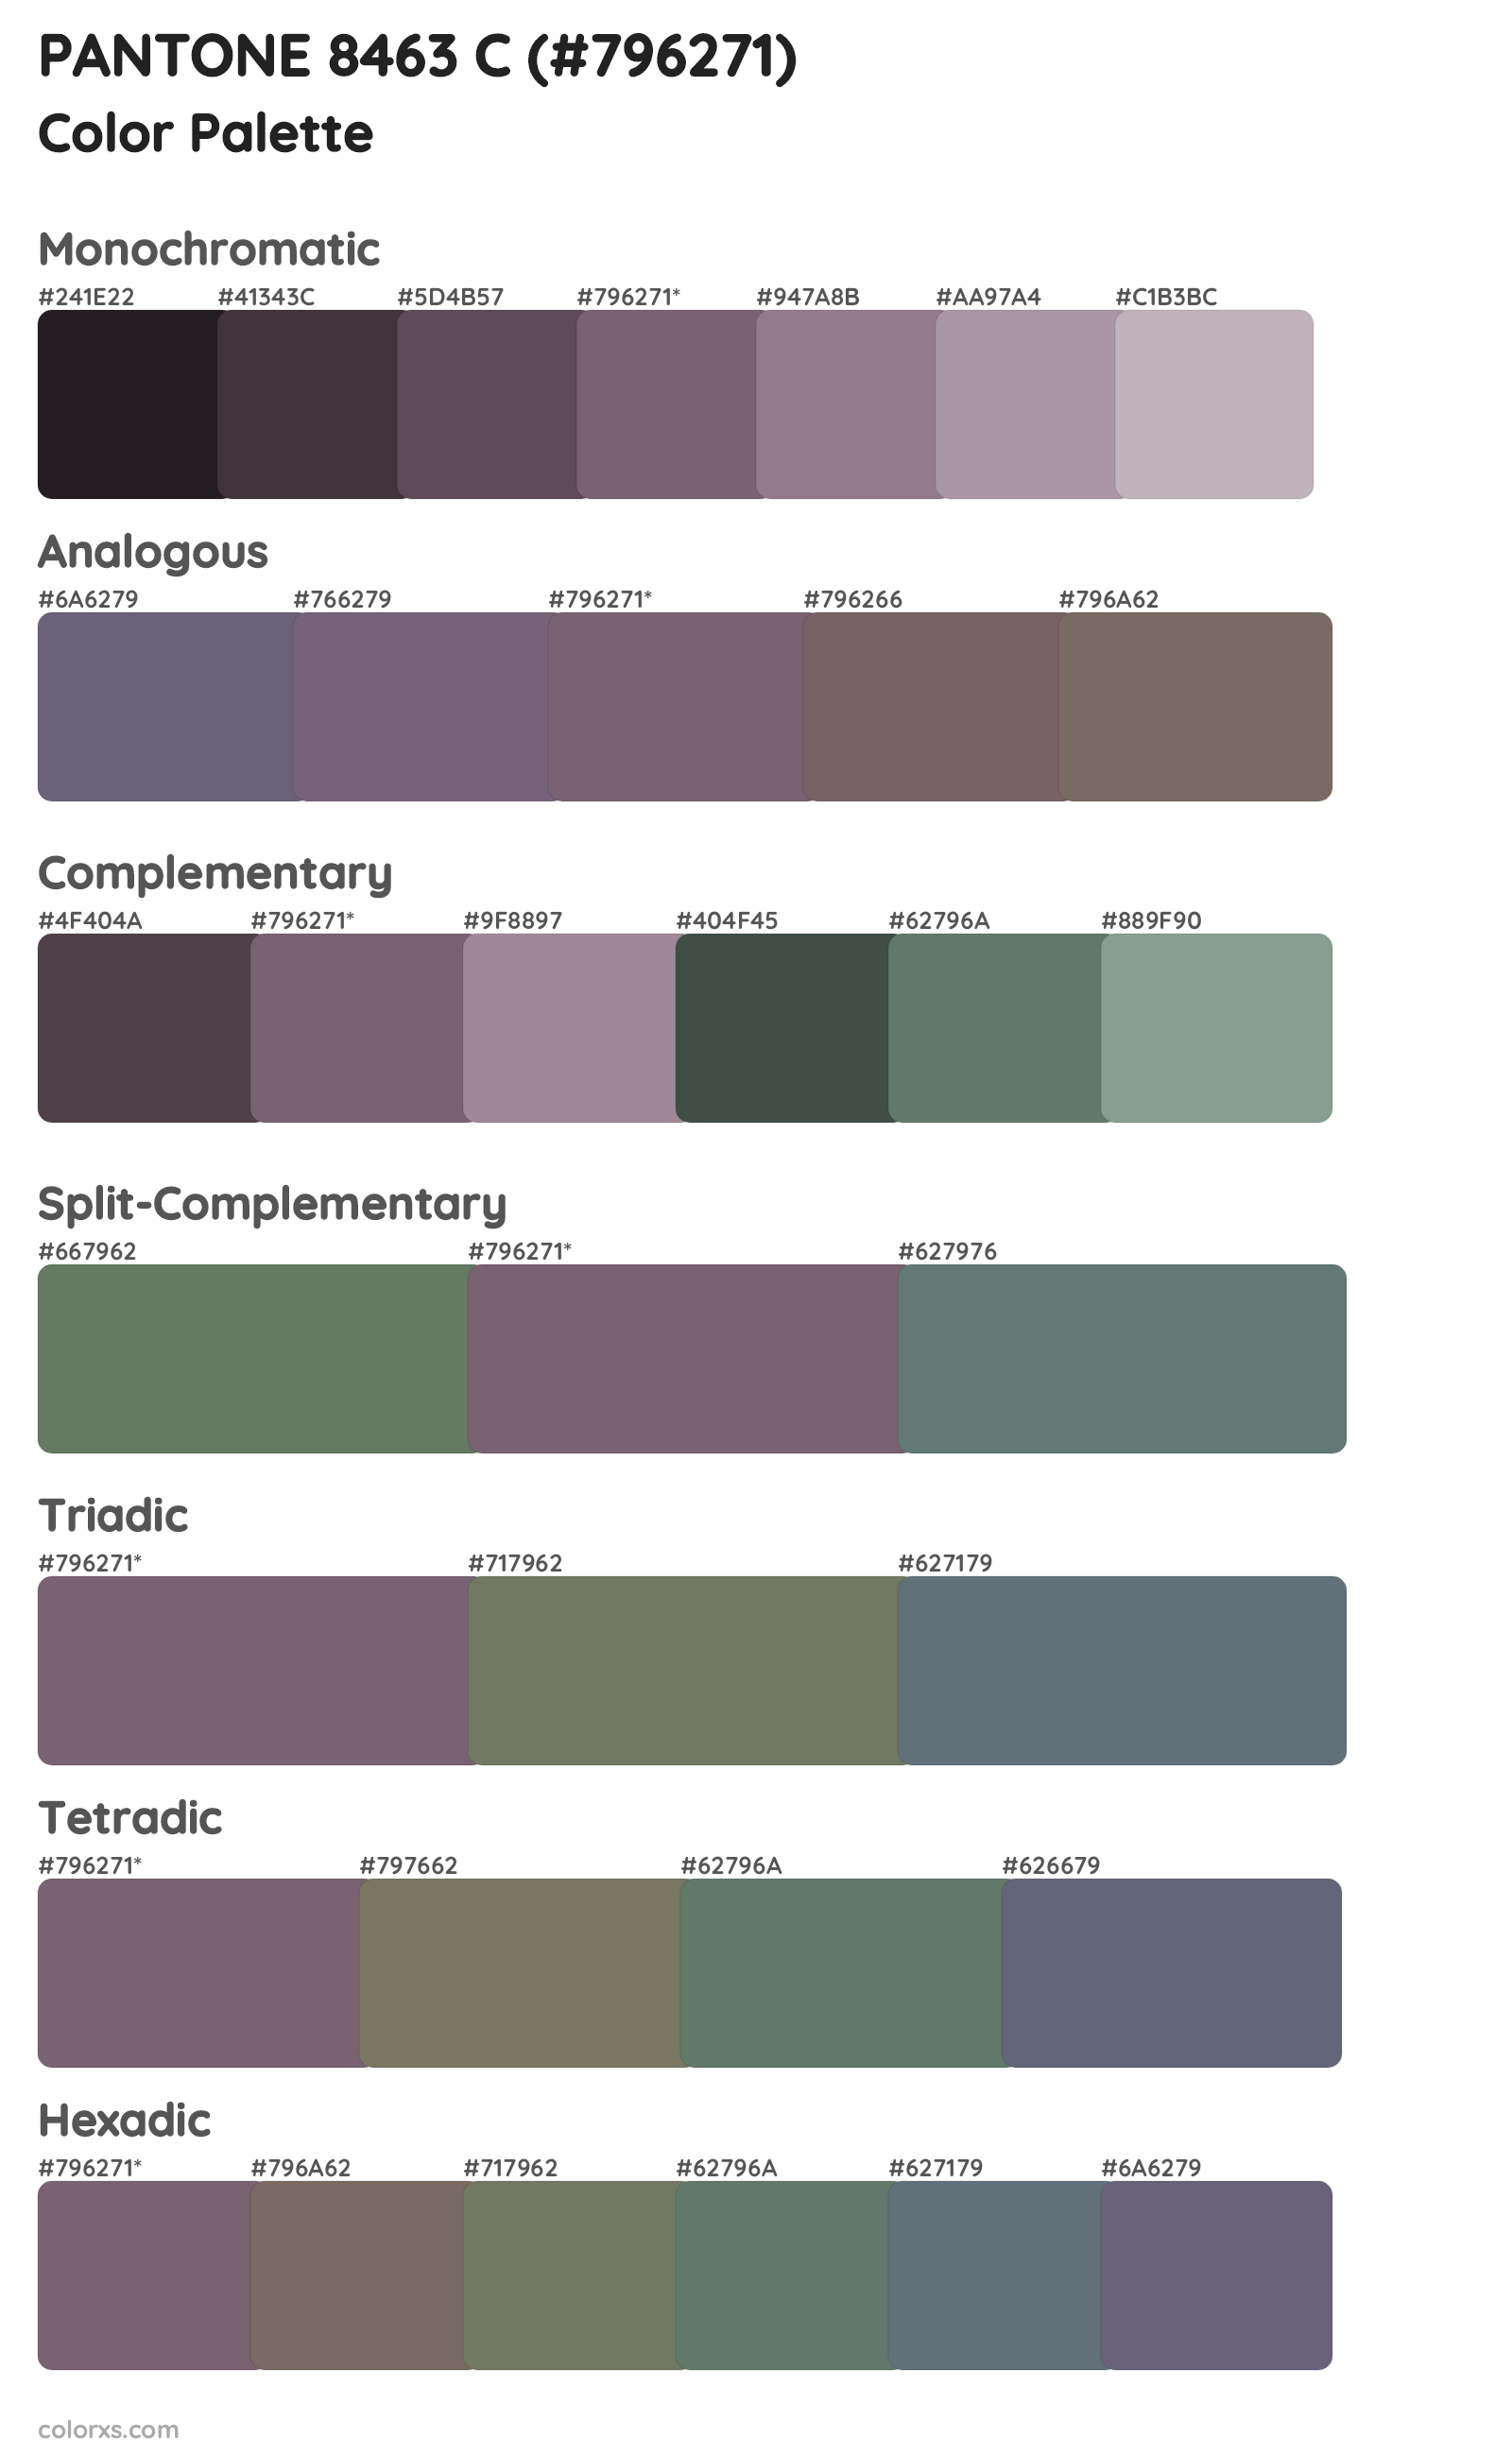 PANTONE 8463 C Color Scheme Palettes